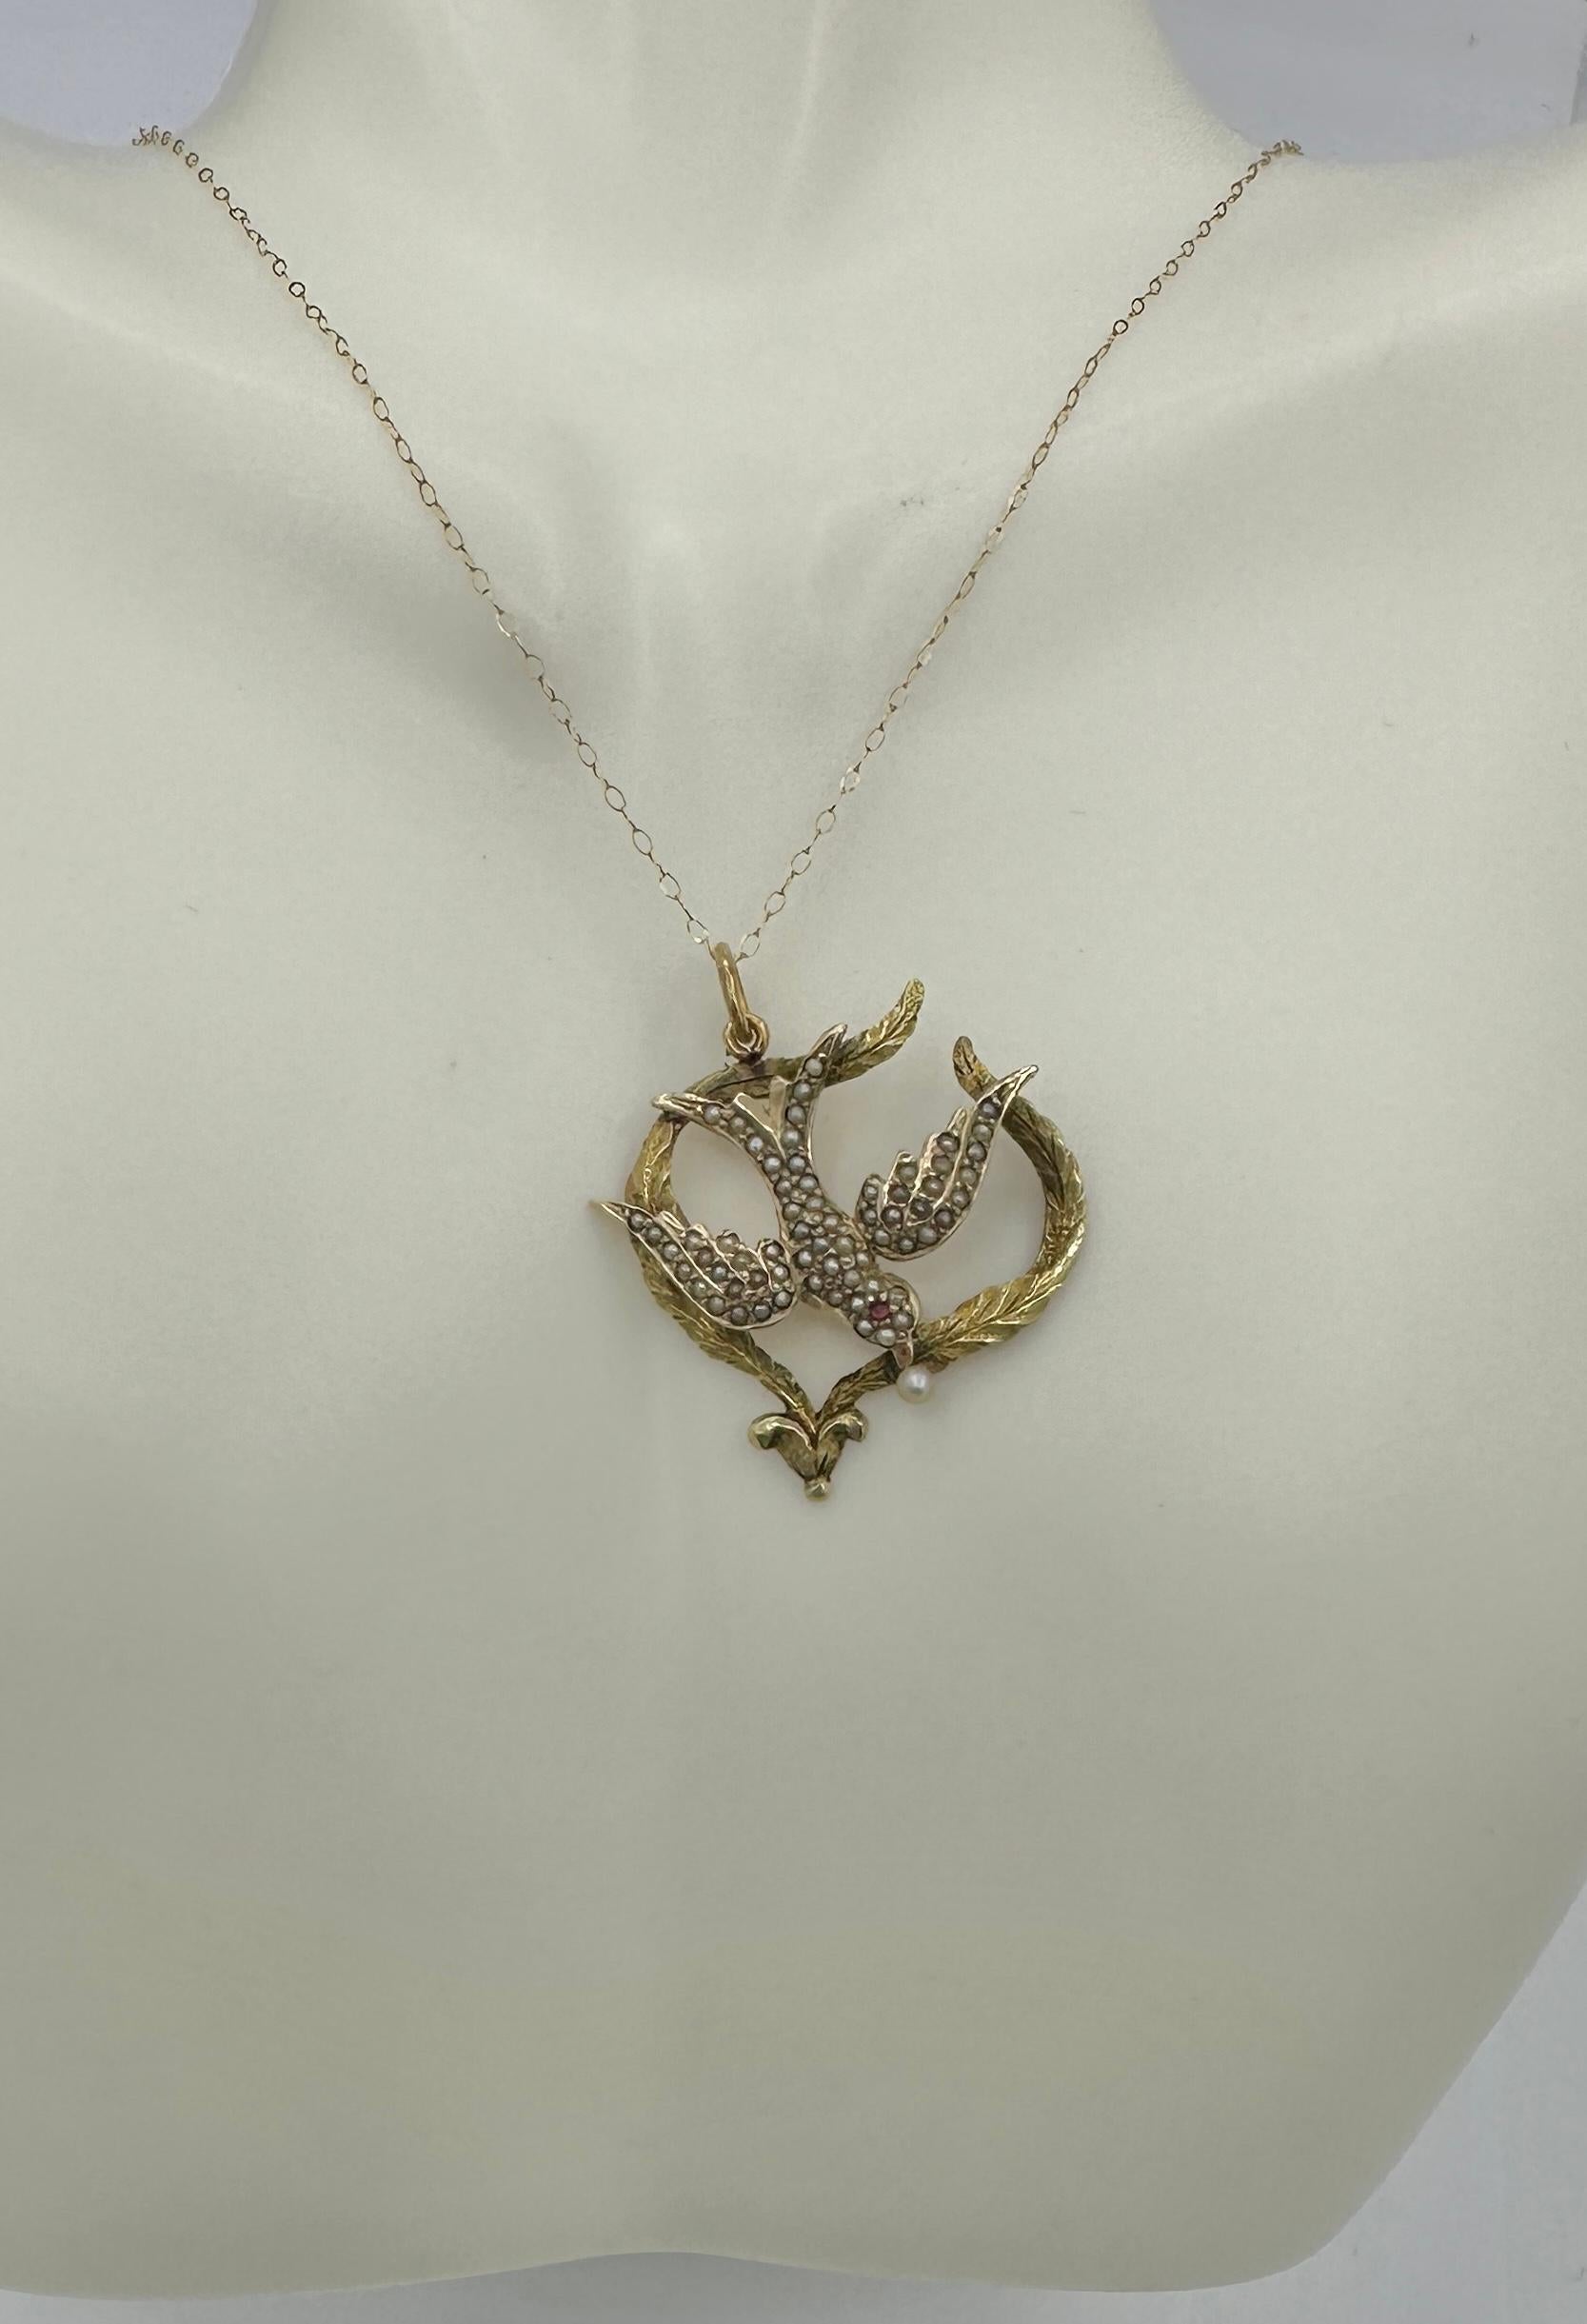 Dies ist eine wunderschöne antike viktorianische Taube Schwalbe Vogel des Friedens Anhänger Halskette geschmückt mit einer Perle in den Mund, ein Rubin Auge, und Samen Perlen in der Schaffung der weißen Federn der Taube.  Der Lavaliere-Anhänger hat